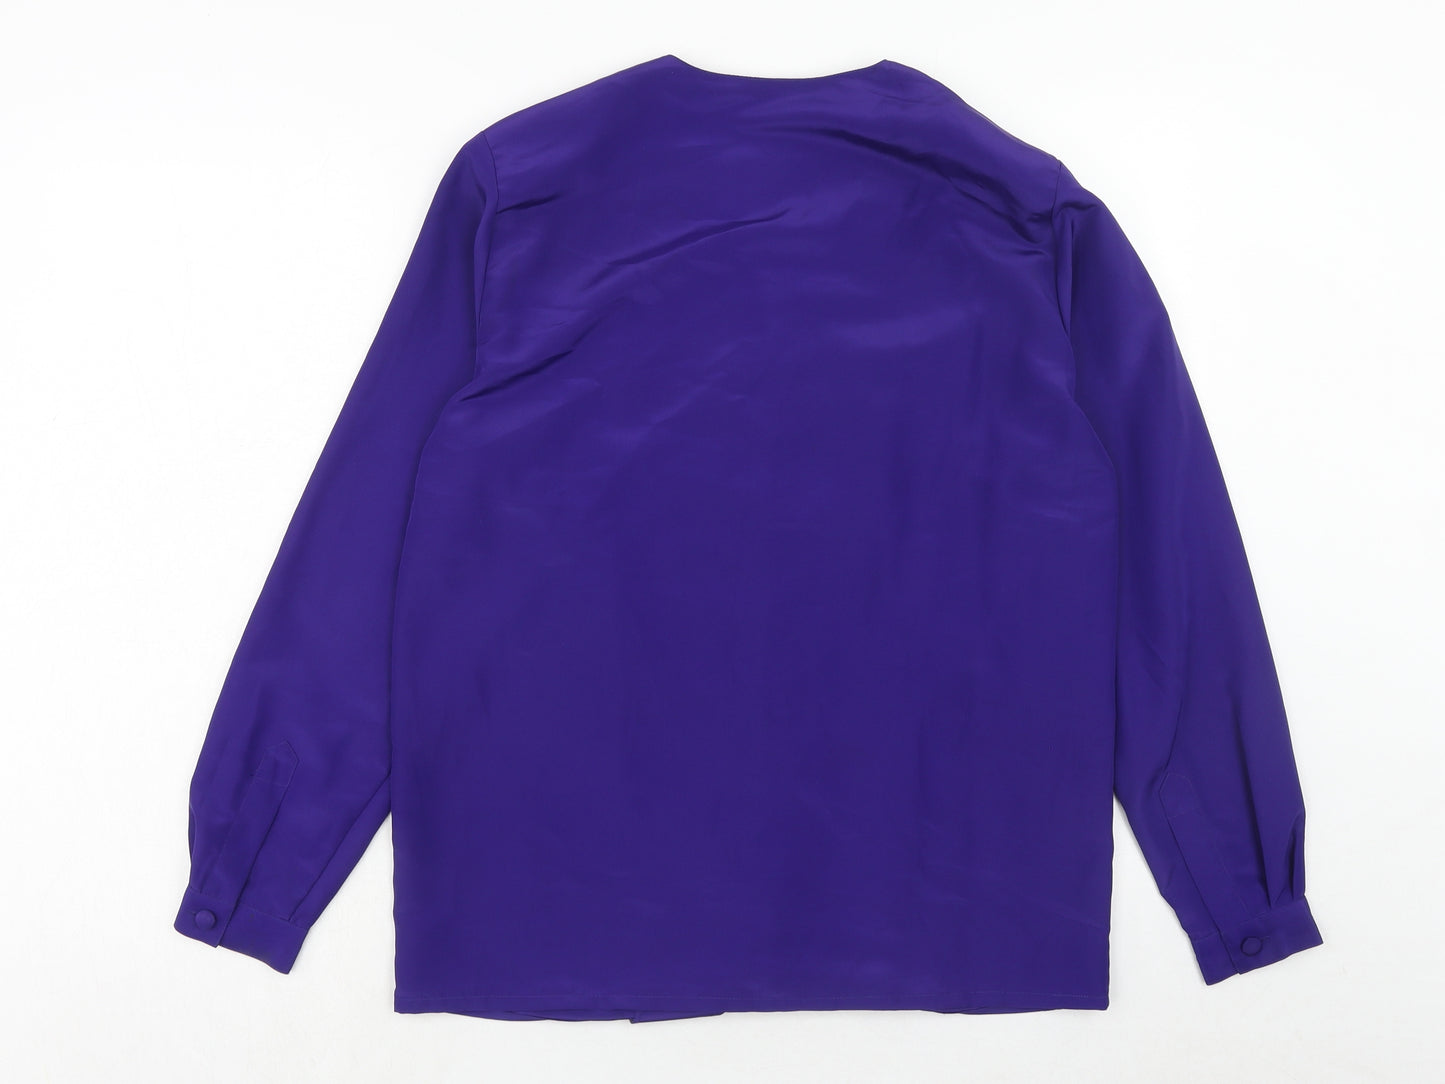 Alexon Womens Purple Polyester Basic Button-Up Size 10 V-Neck